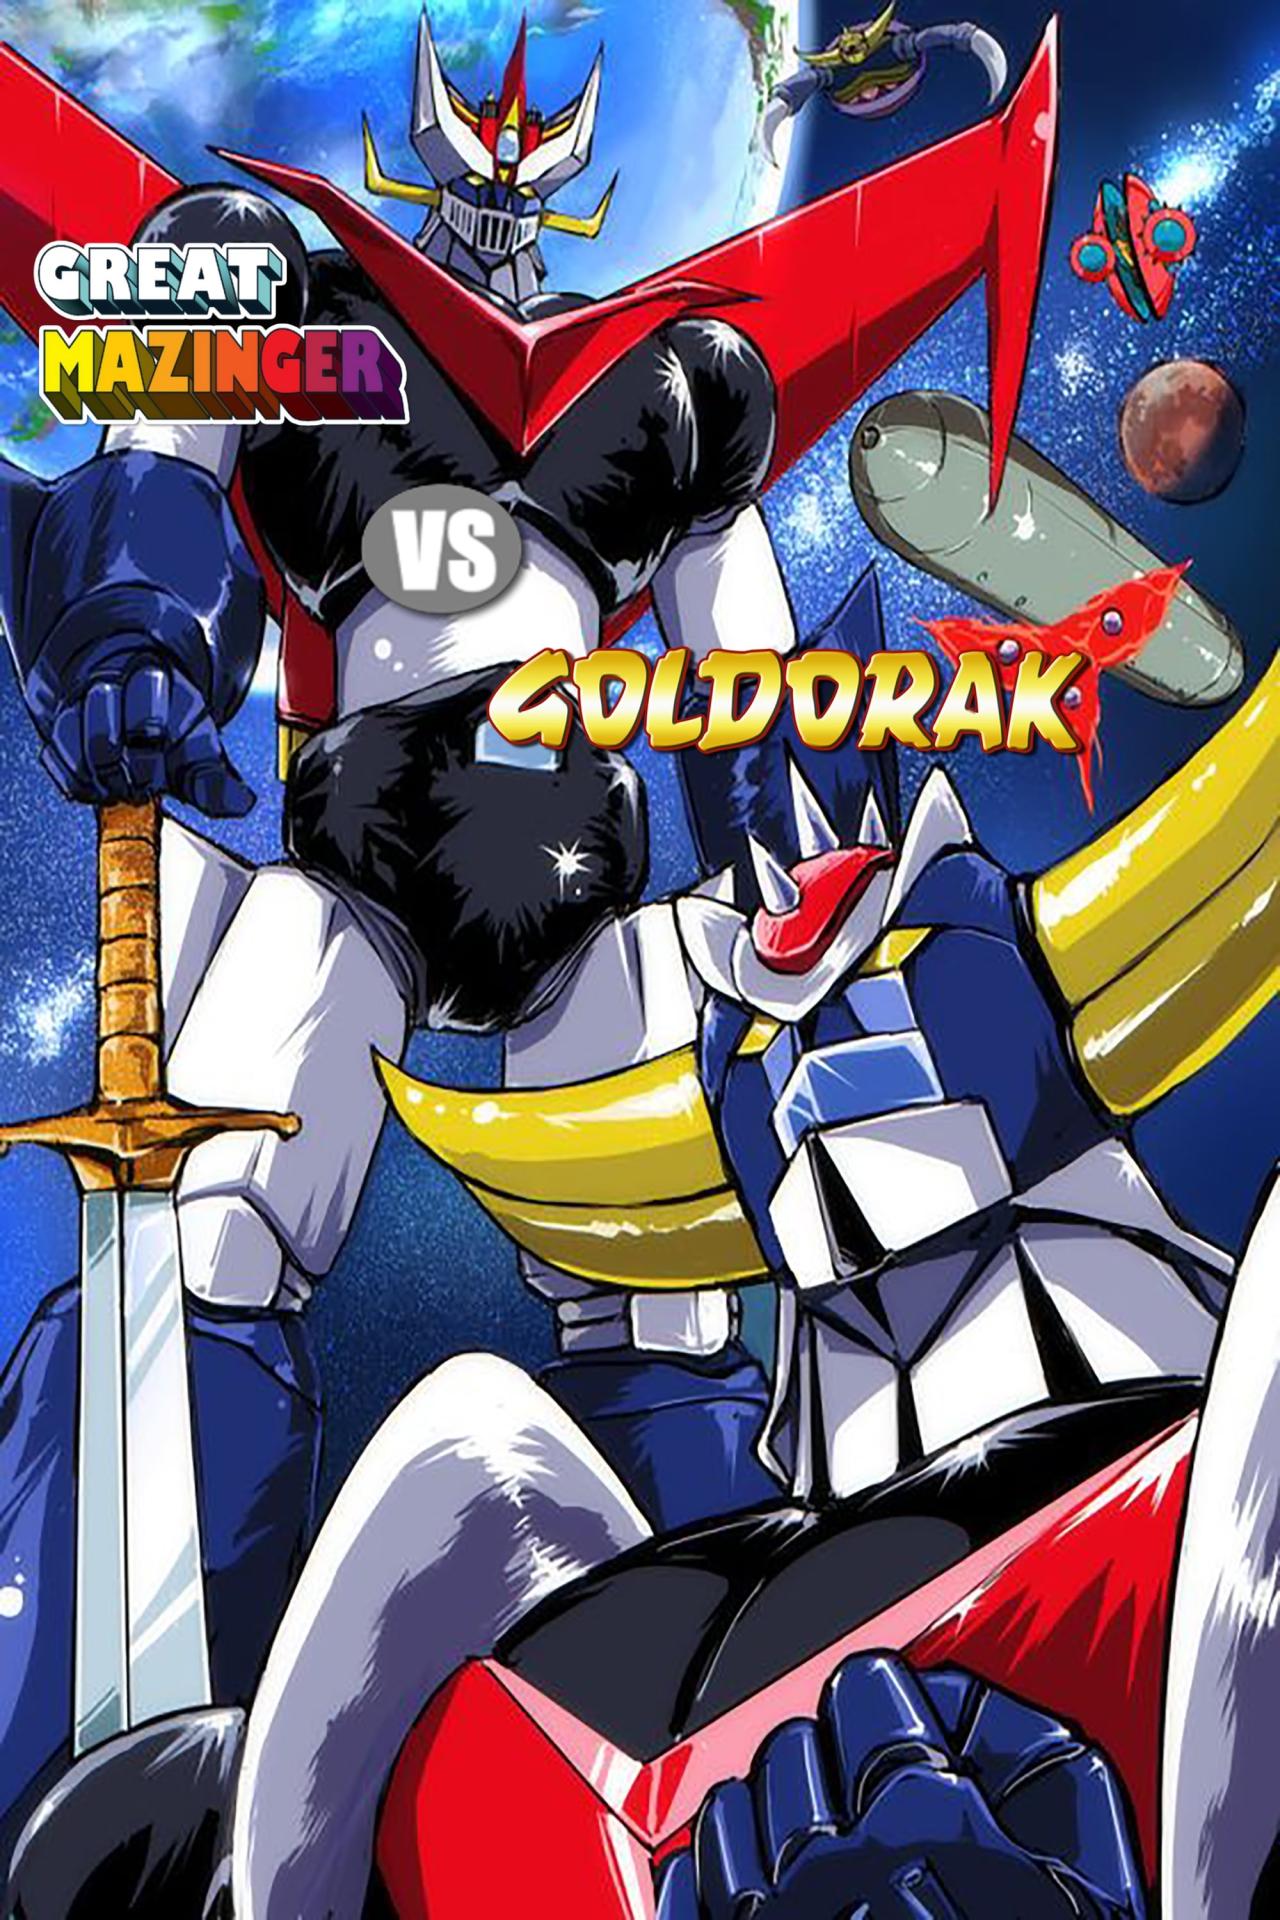 Goldorak contre Great Mazinger est-il disponible sur Netflix ou autre ?